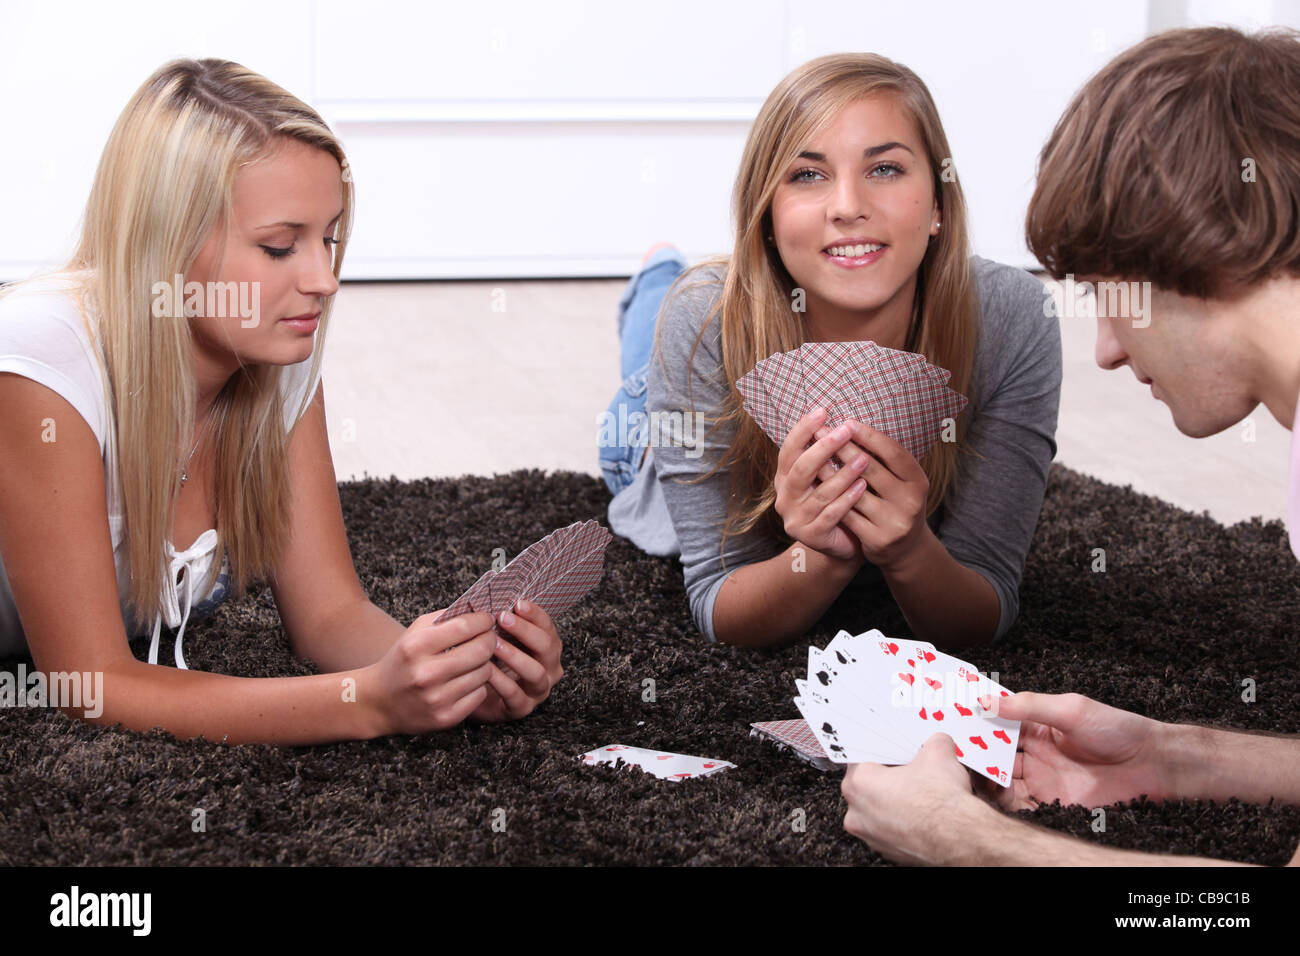 Игры на раздевание рассказы. Мальчик и девочка играют в карты. Девочки играют в карты. Девочки играют в карты на раздевание. Девушки играющие в карты.